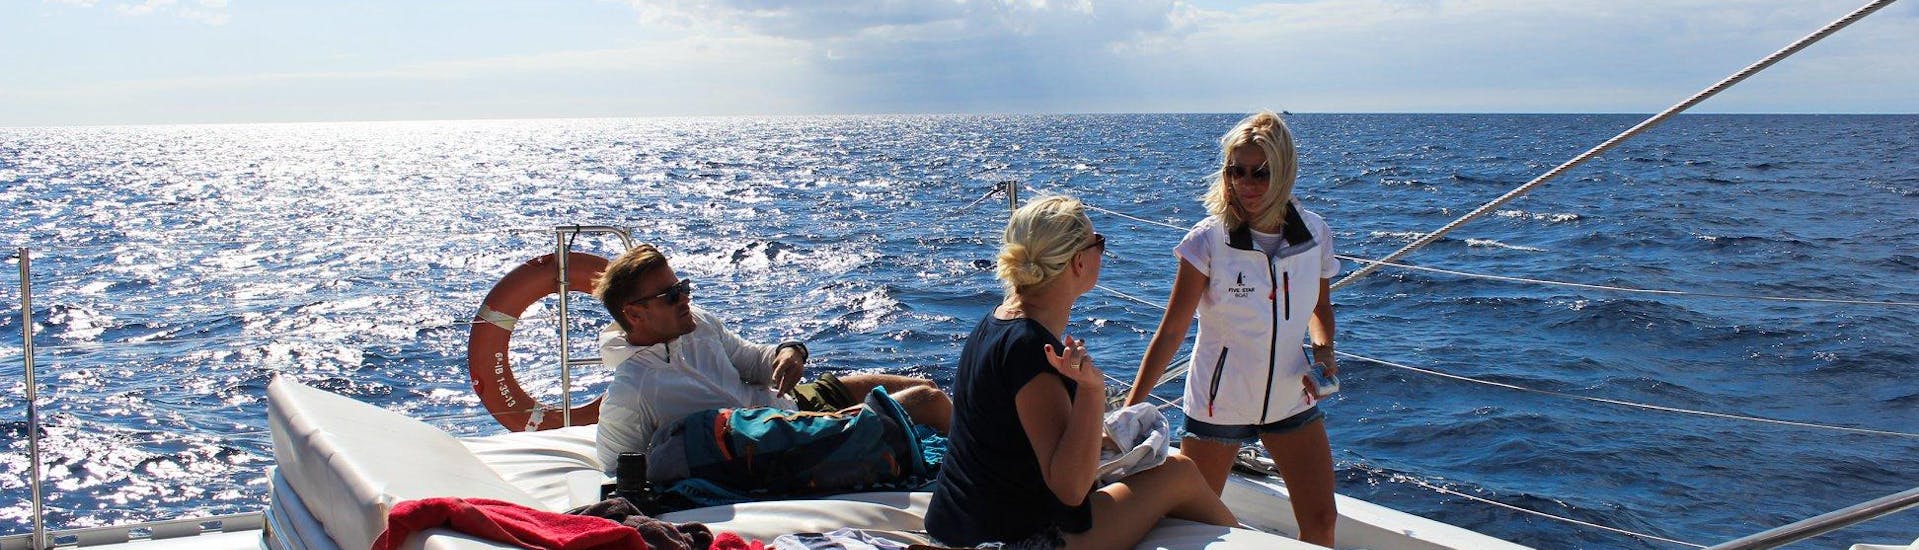 Gita privata in catamarano da Puerto Rico de Gran Canaria  e bagno in mare.